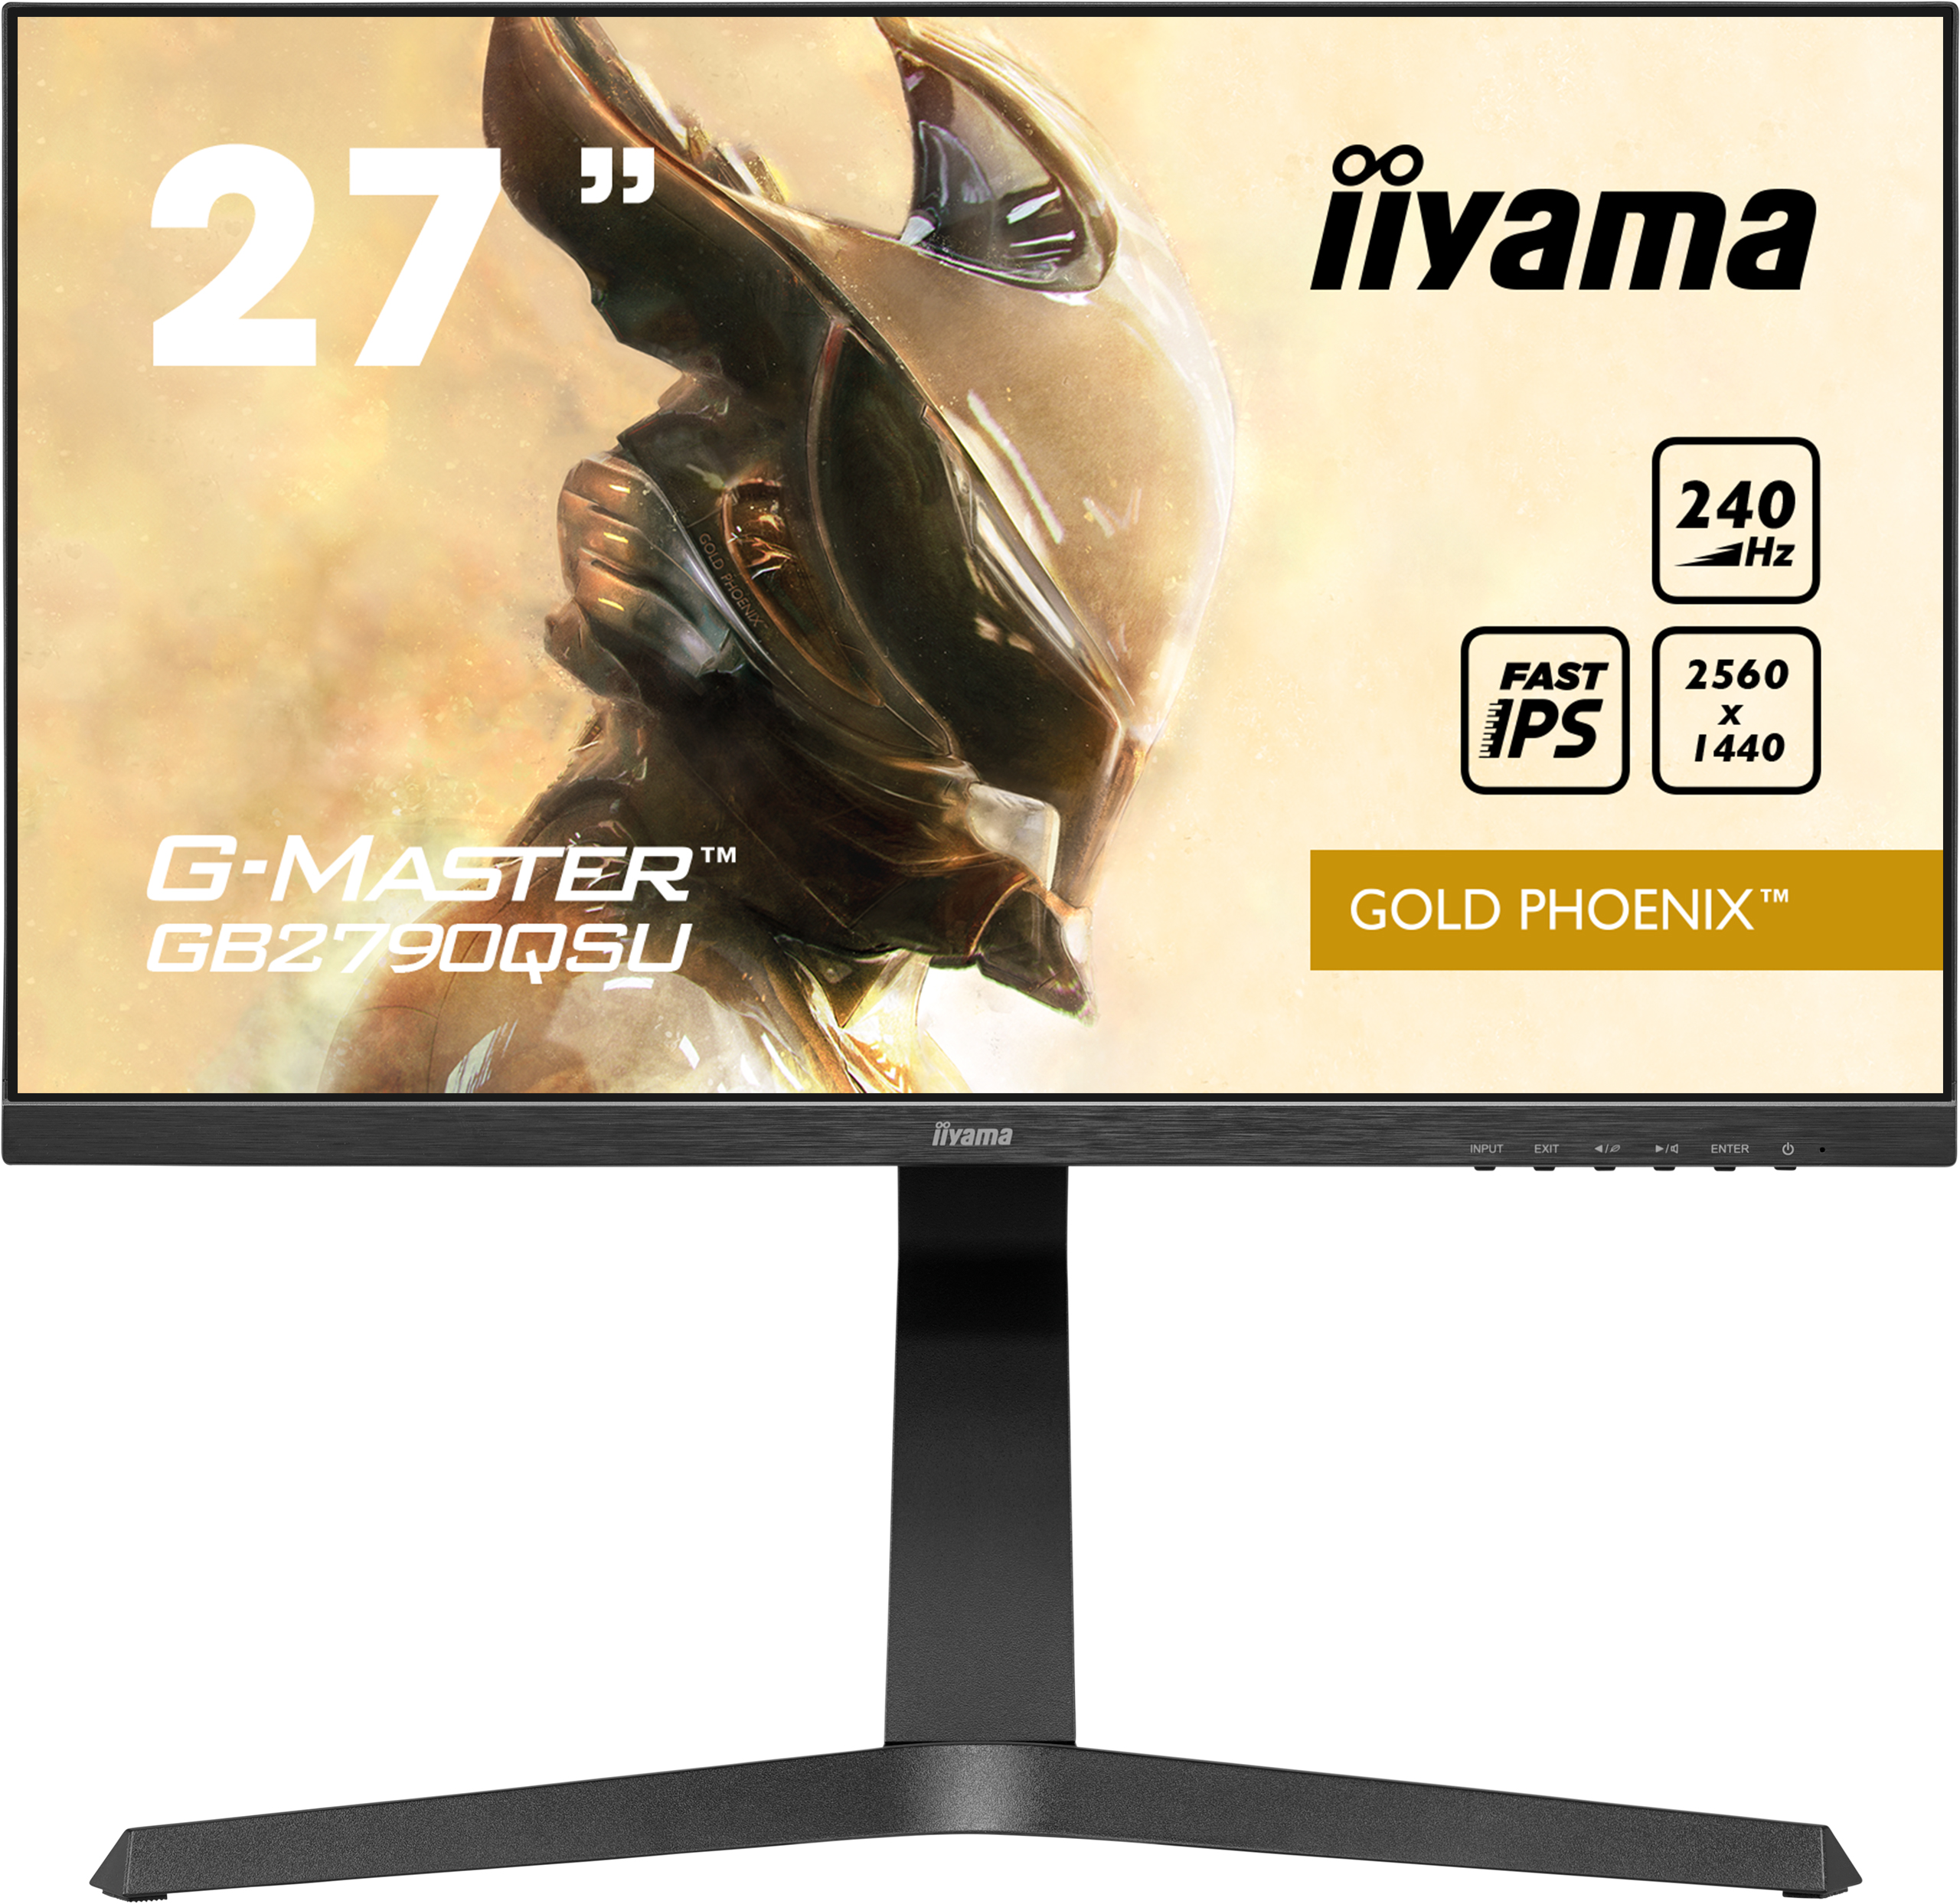 Iiyama G-MASTER GB2790QSU-B1 GOLD PHOENIX | 27" | 2560 x 1440 @240Hz (3.7 megapixel WQHD) | Gaming Monitor